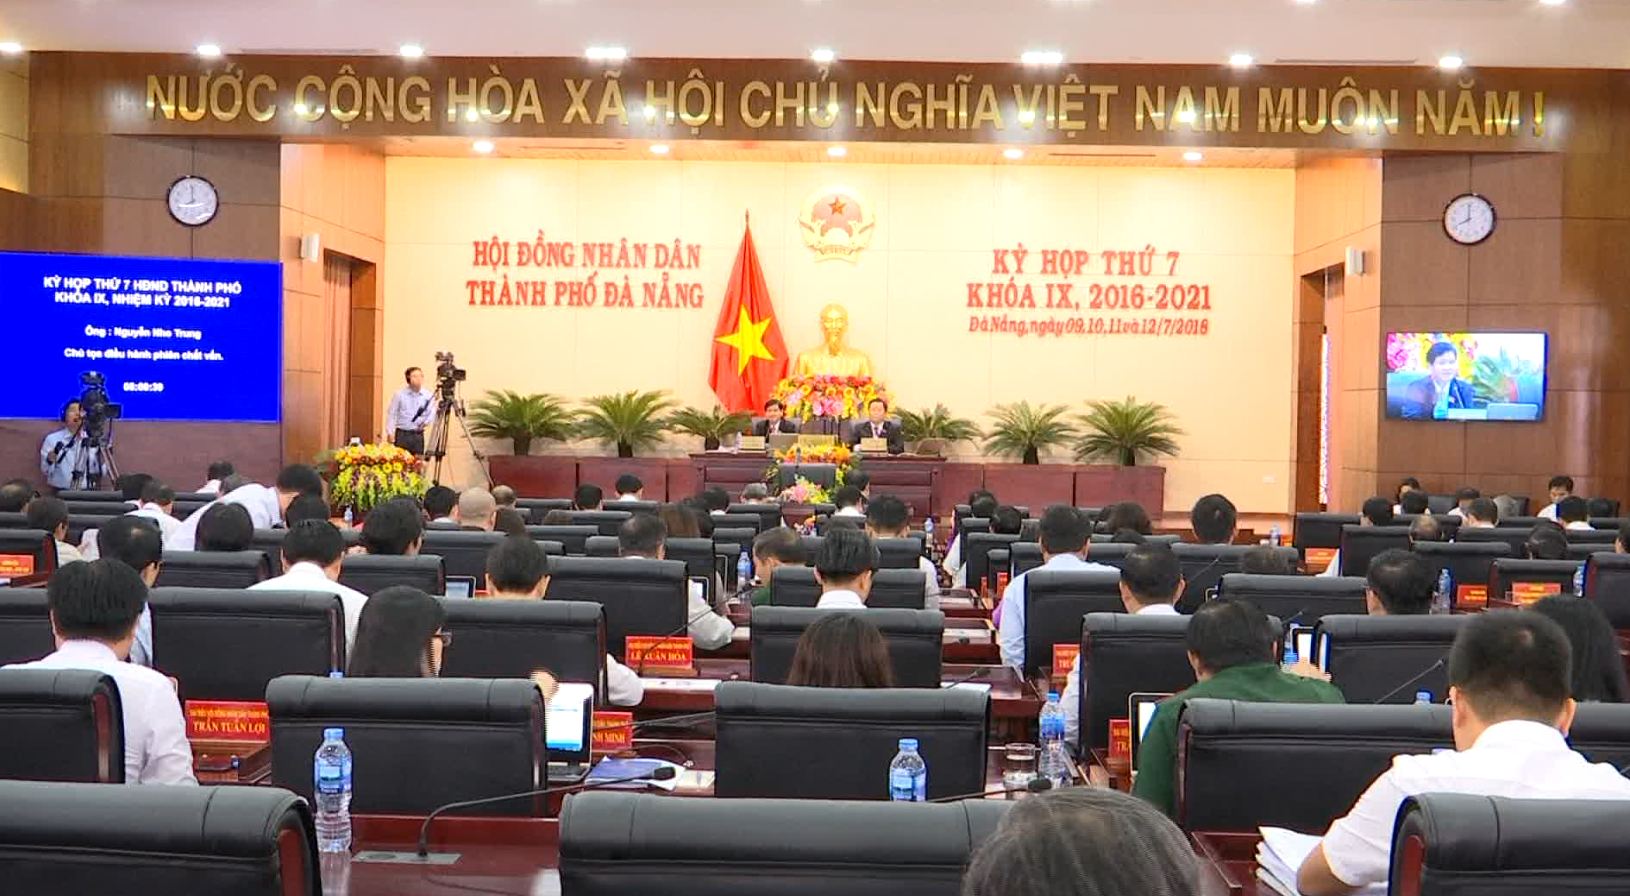 Thông báo Kỳ họp thứ 9 Hội đồng Nhân dân thành phố Đà Nẵng khóa IX, nhiệm kỳ 2016-2021